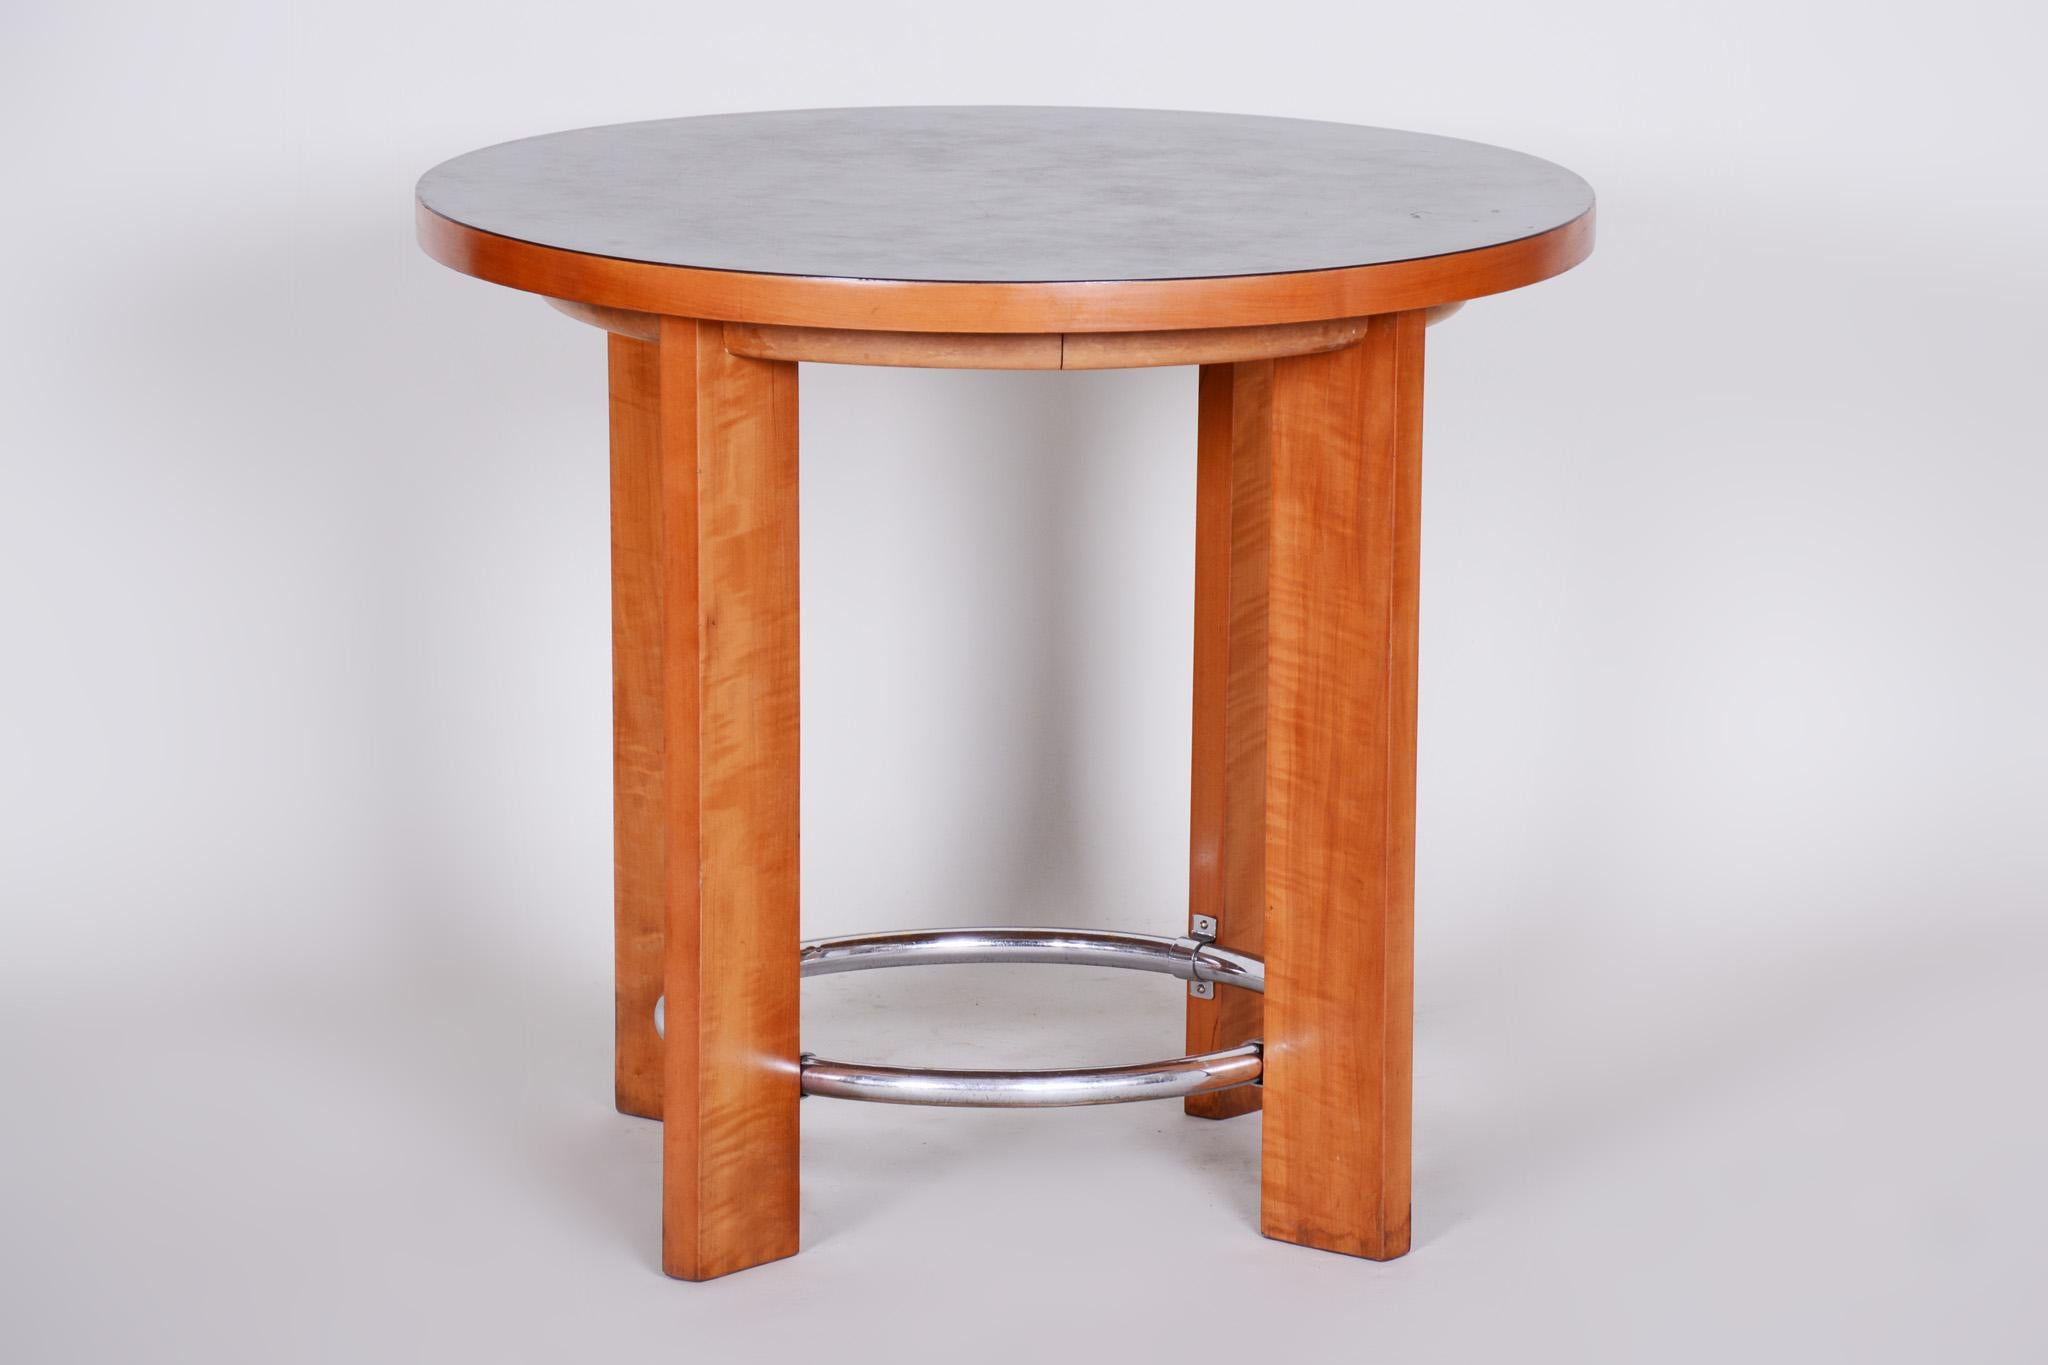 Table Art déco, tchèque
Restauré. 
MATERIAL : Noyer, marmoleum, chrome.